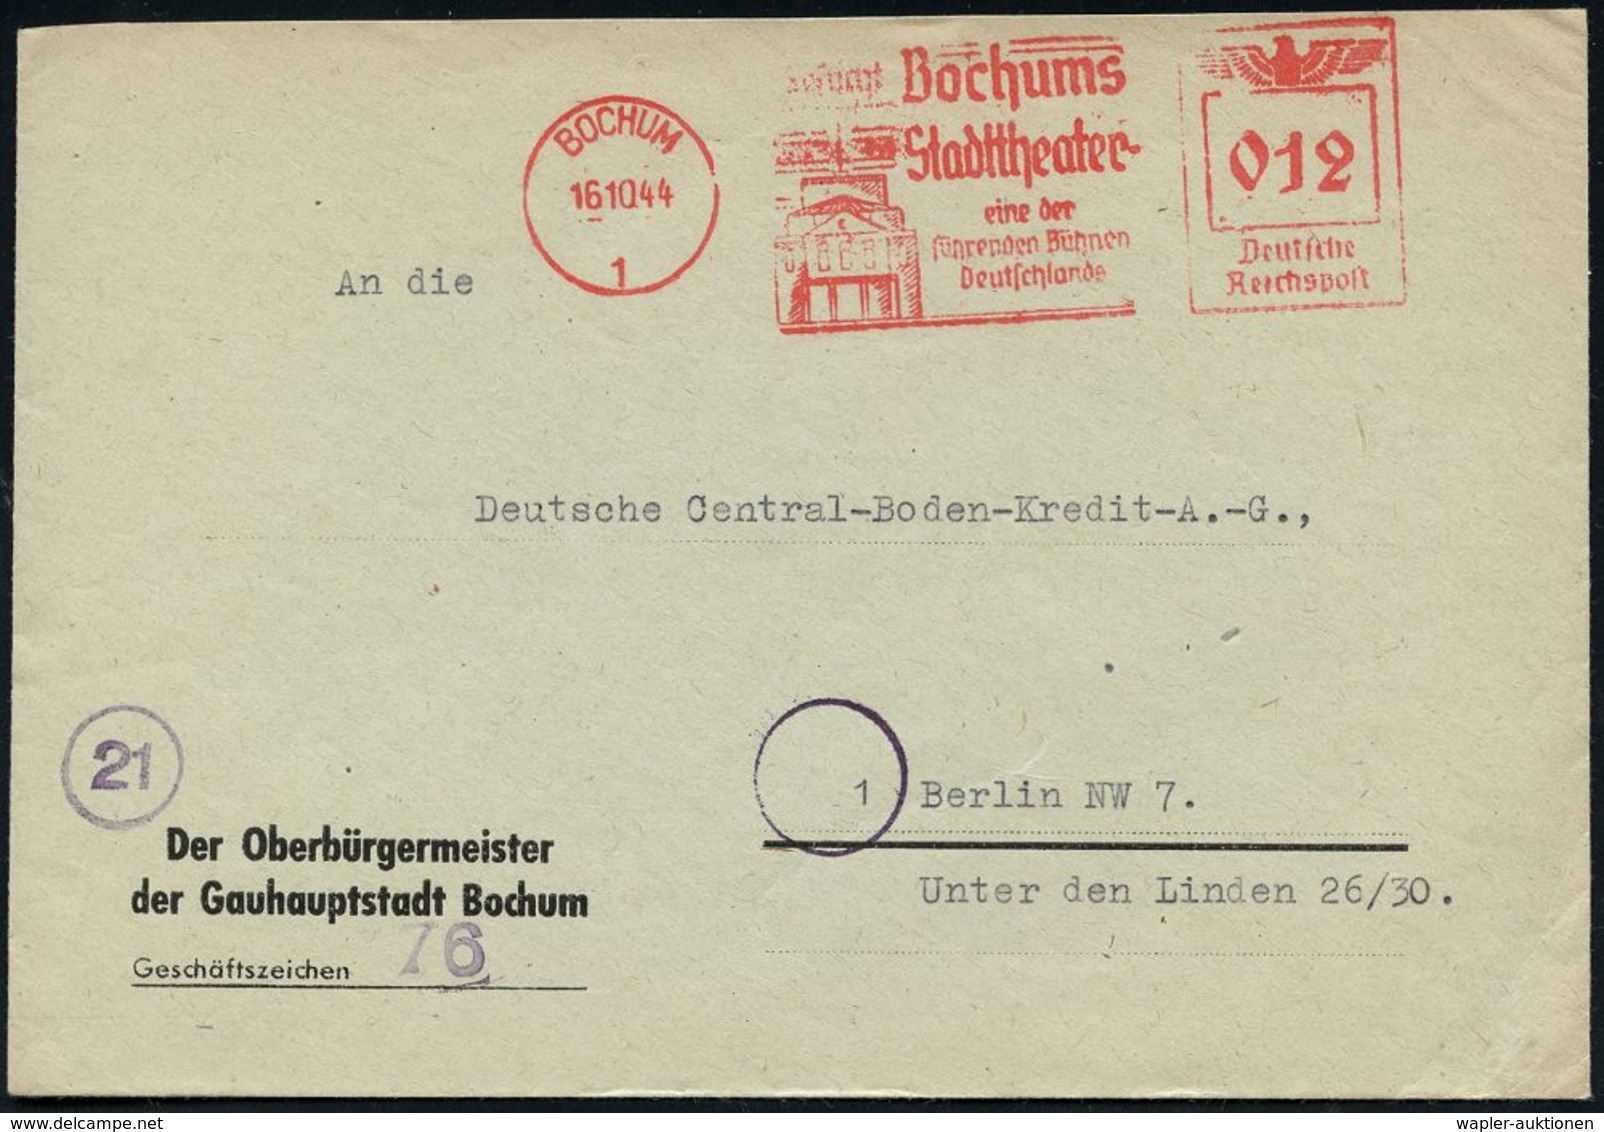 BÜHNE / THEATER / THEATER-FESTIVALS : BOCHUM/ 1/ ..Bochums/ Stadttheater/ Eine Der/ Führenden Bühnen/ Deutschlands 1944  - Teatro